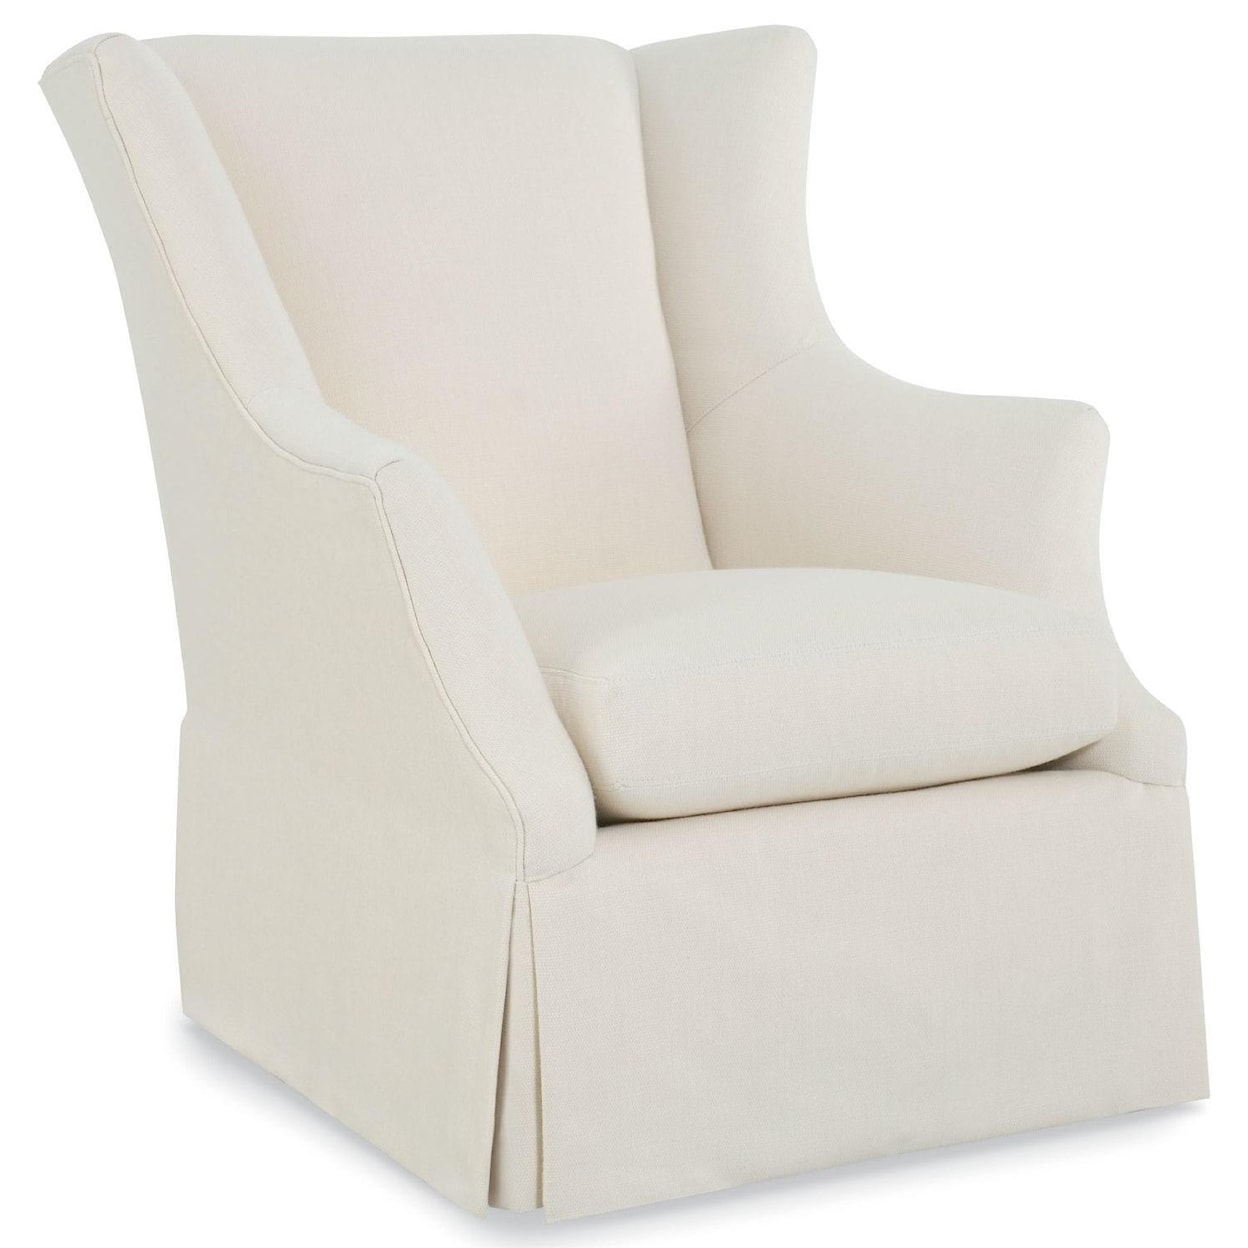 C.R. Laine Holly Holly Swivel Chair